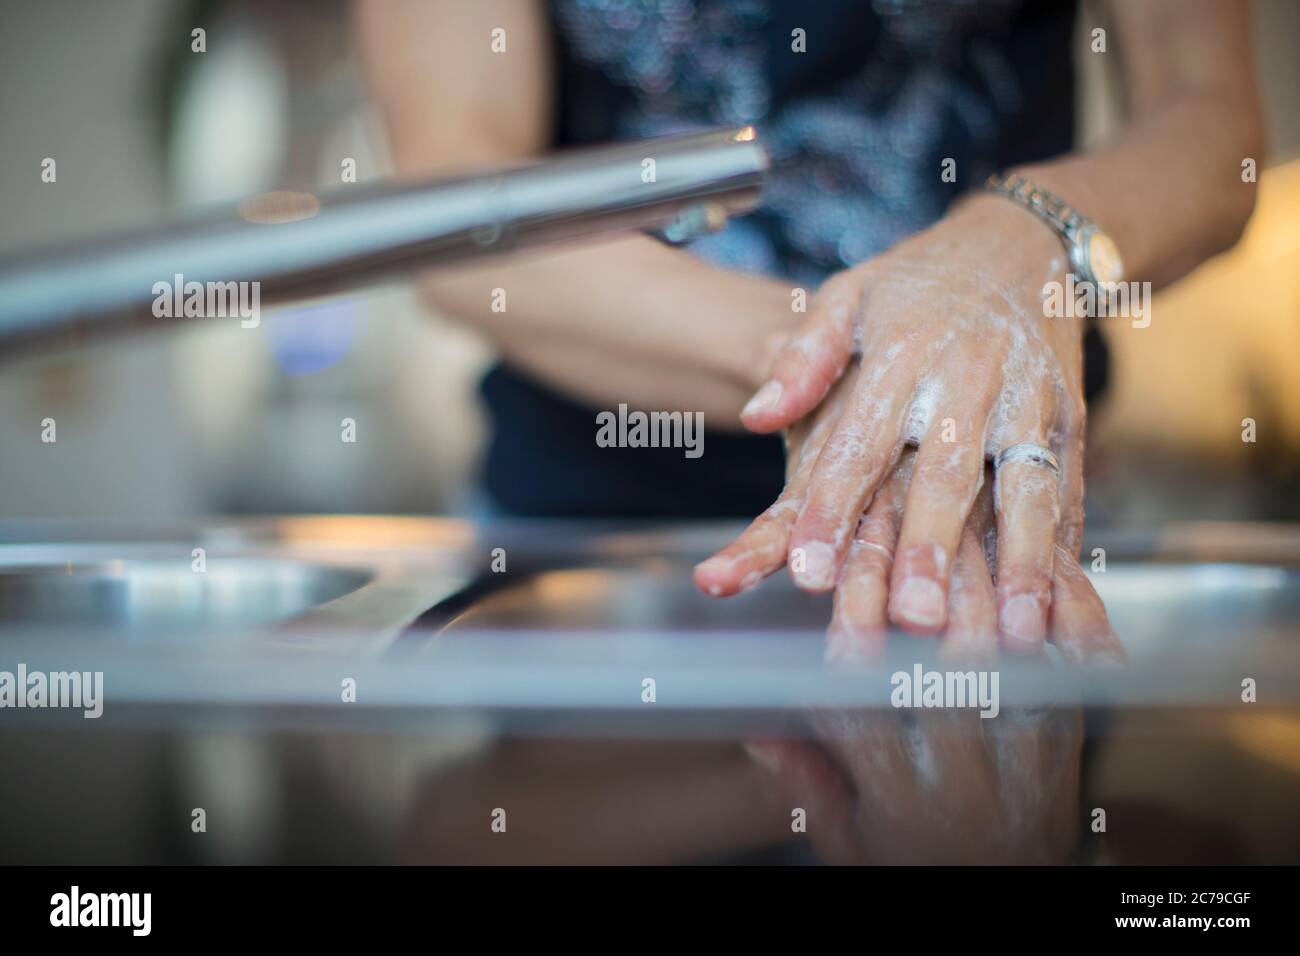 Chiudi donna lavando le mani con sapone al lavello della cucina Foto Stock